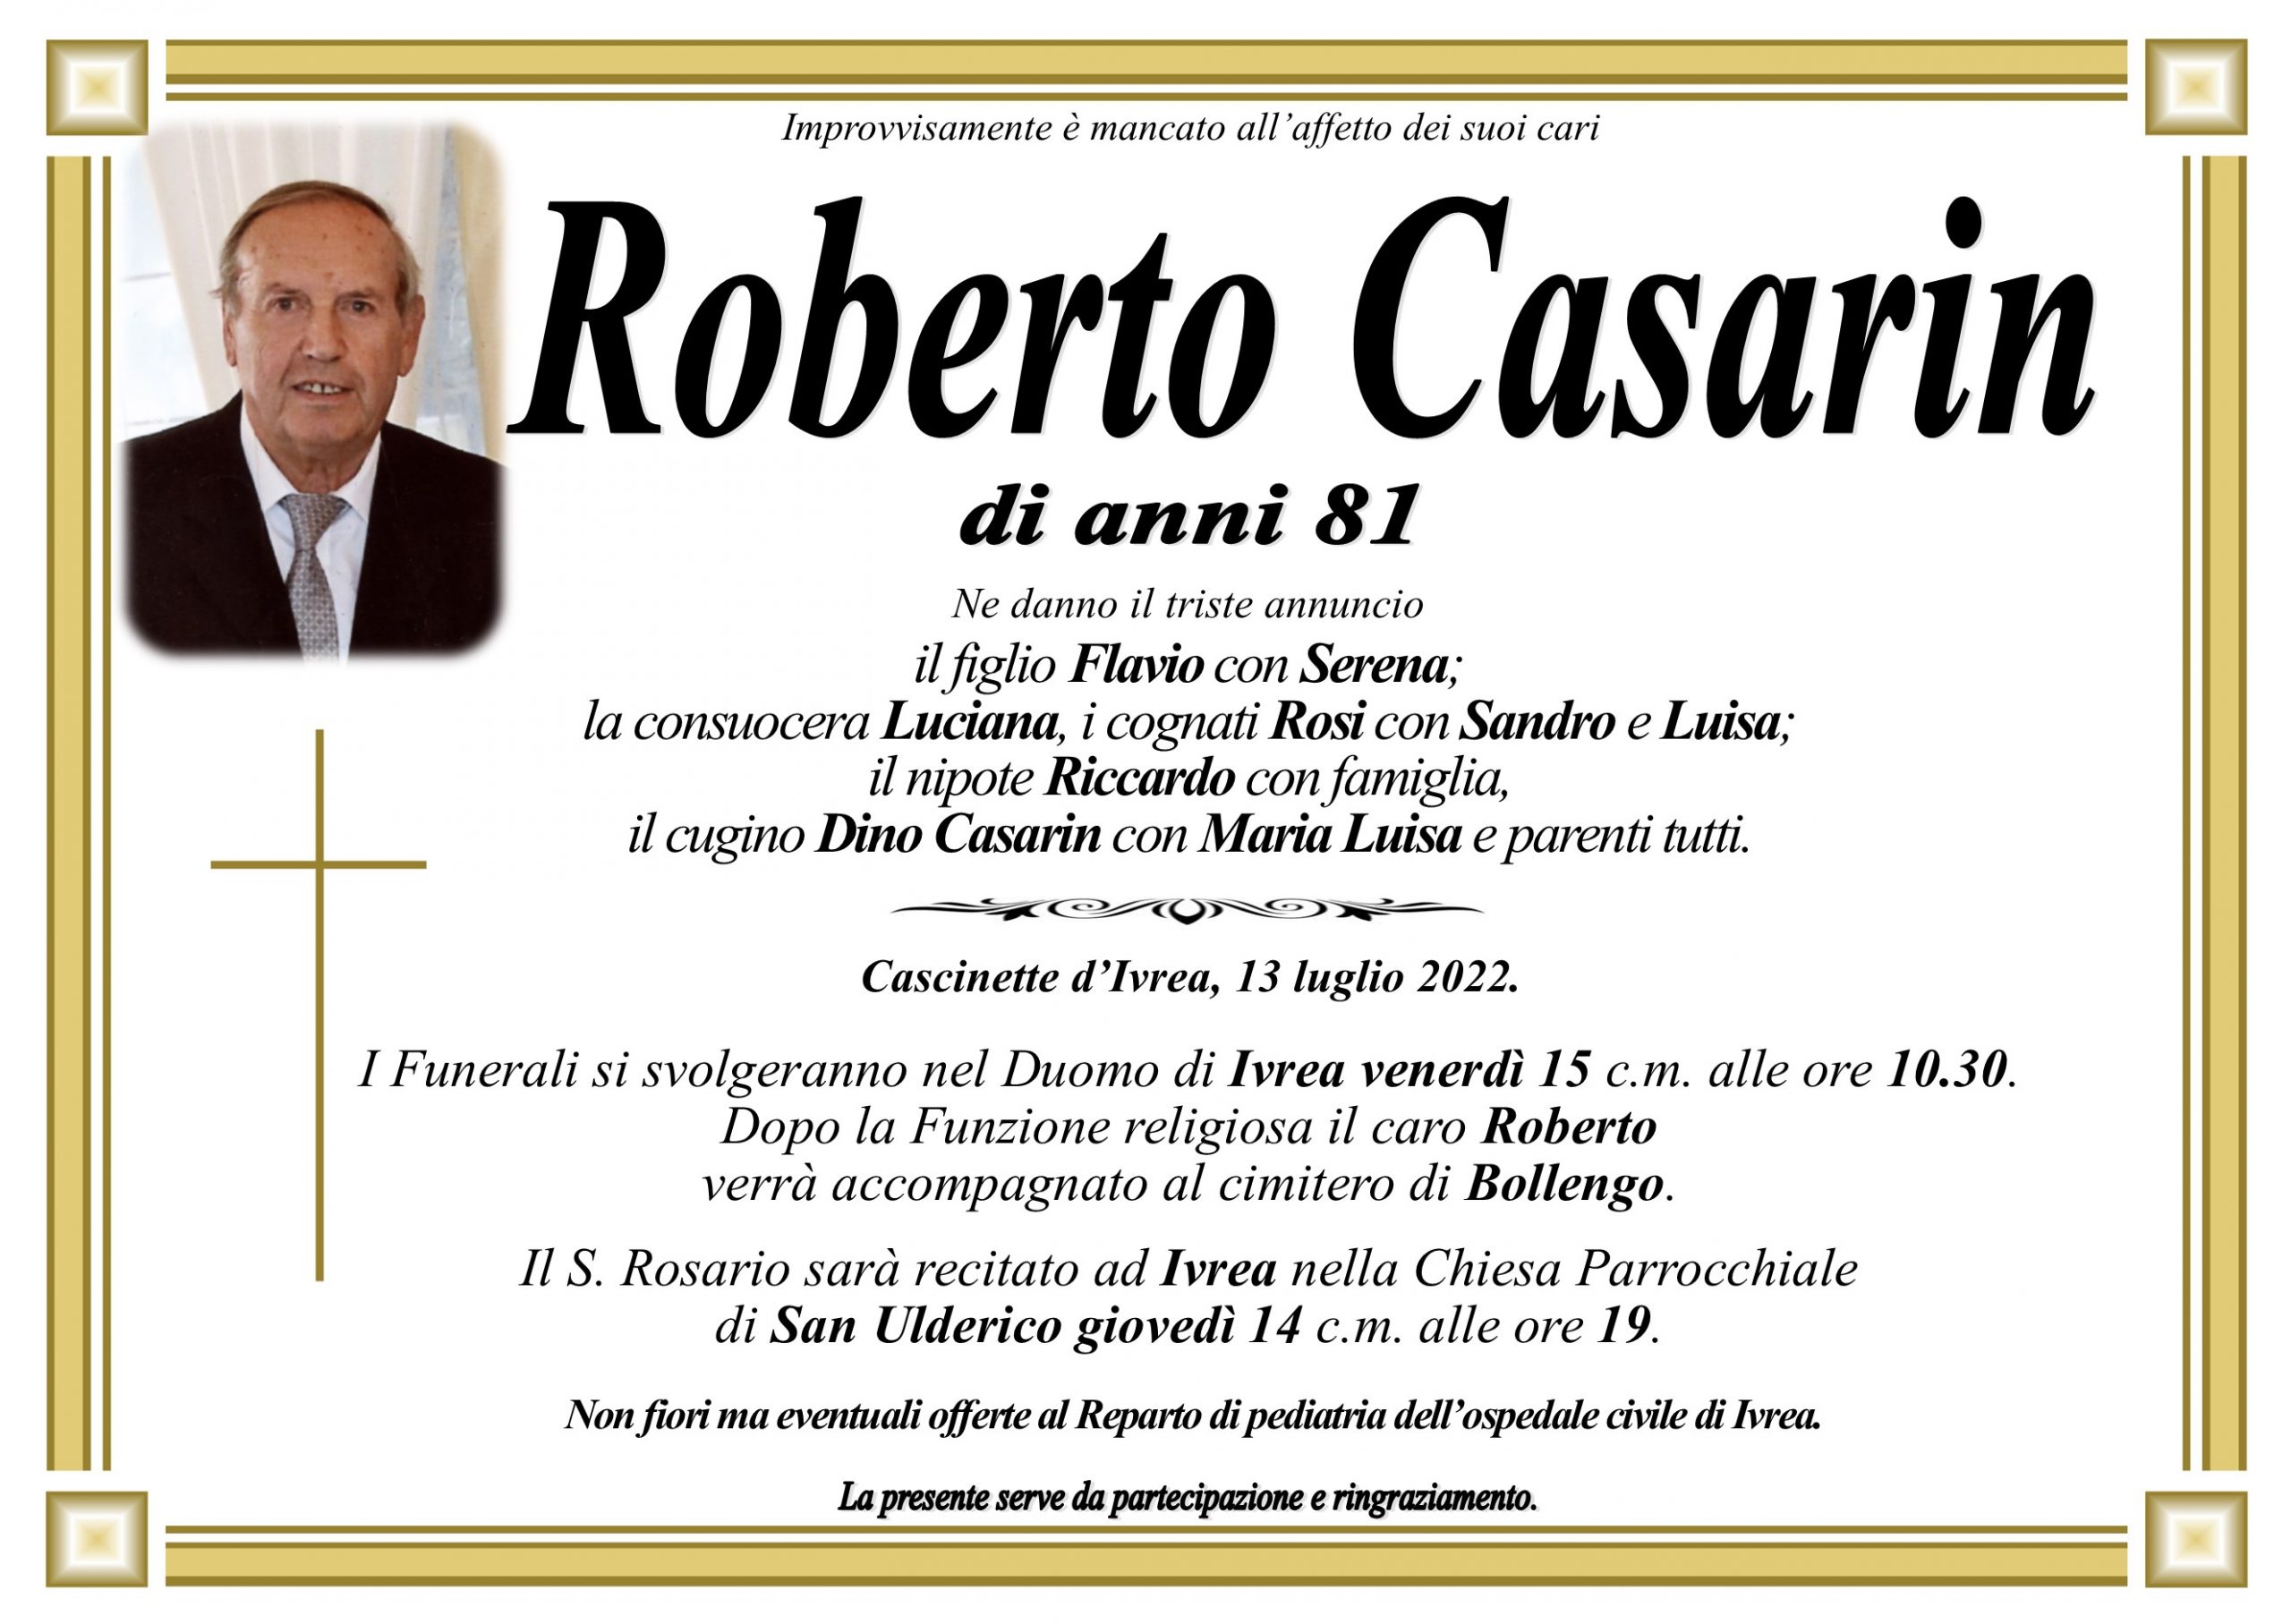 Roberto Casarin 81 anni 13 luglio 2022